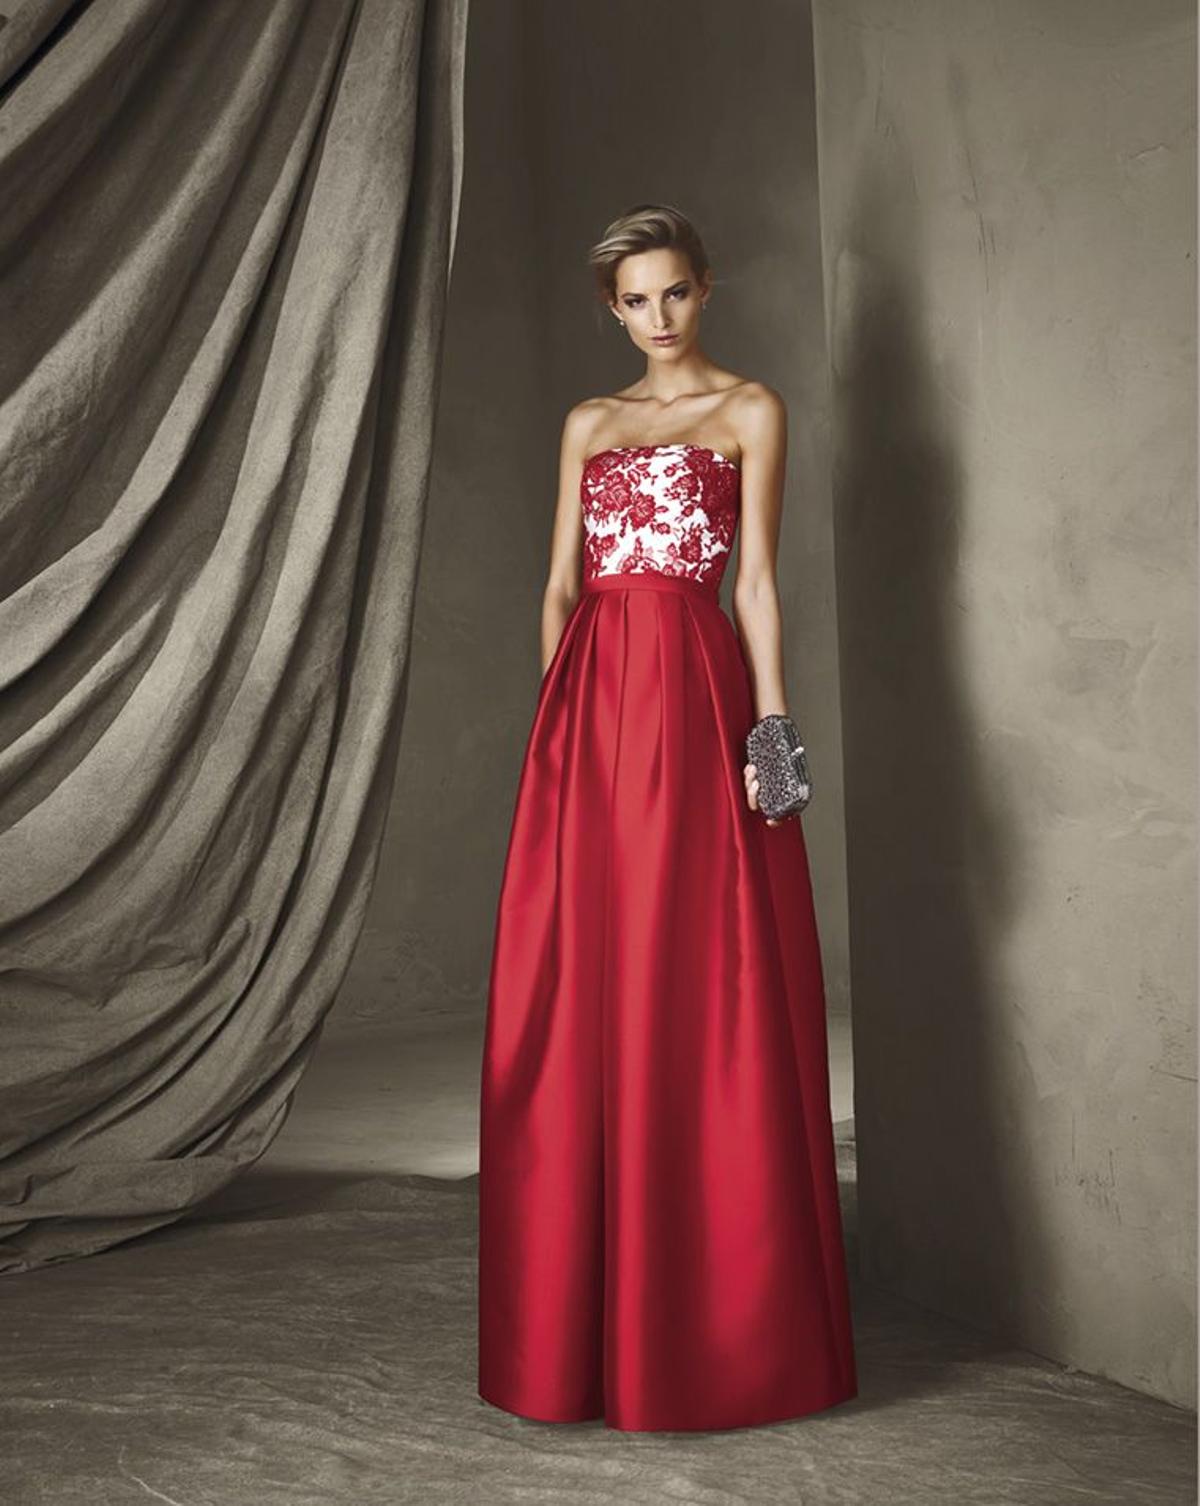 Invitadas con estilo: elegante diseño en rojo y blanco, con escote palabra de honor y flores bordadas